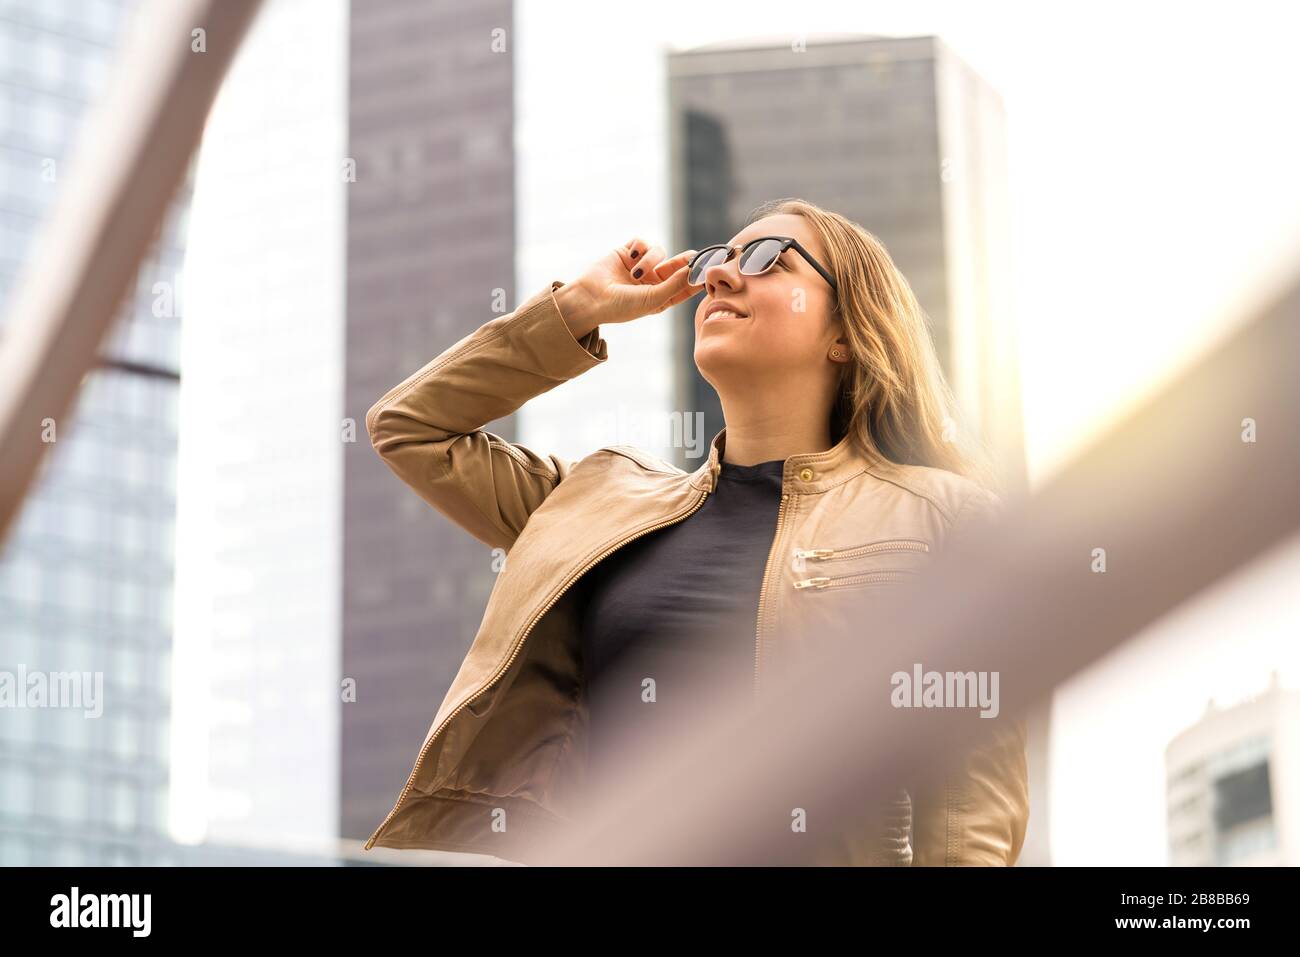 Jeune femme réussie dans la grande ville avec de hauts bâtiments et gratte-ciel. Femme élégante et confiante avec lunettes de soleil. Banque D'Images